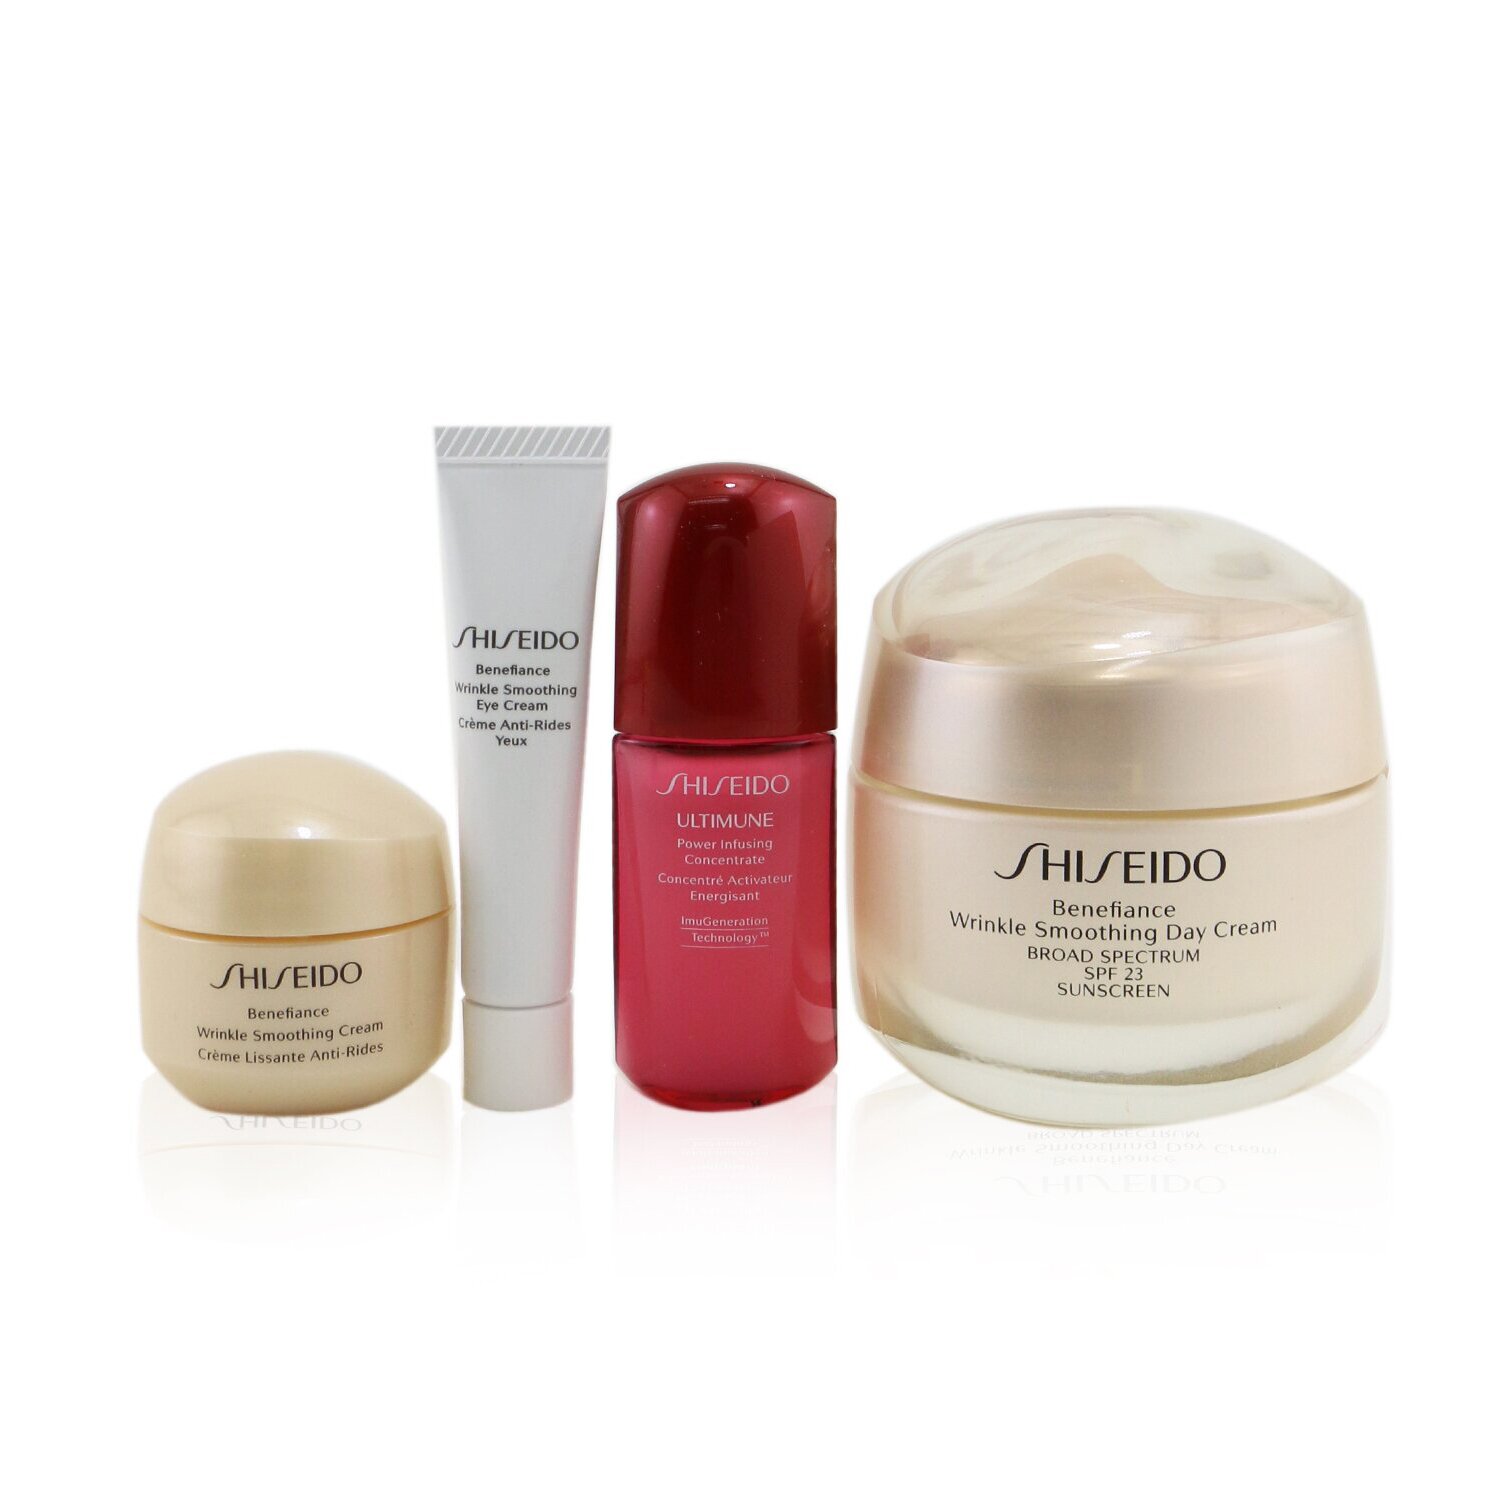 Shiseido Set Smooth Skin Sensations: Benefiance Crema de Día SPF23 50ml + Ultimune Concentrado 10ml + Benefiance Crema Suavizante 15ml + Benefiance Crema de Ojos 5ml 4pcs